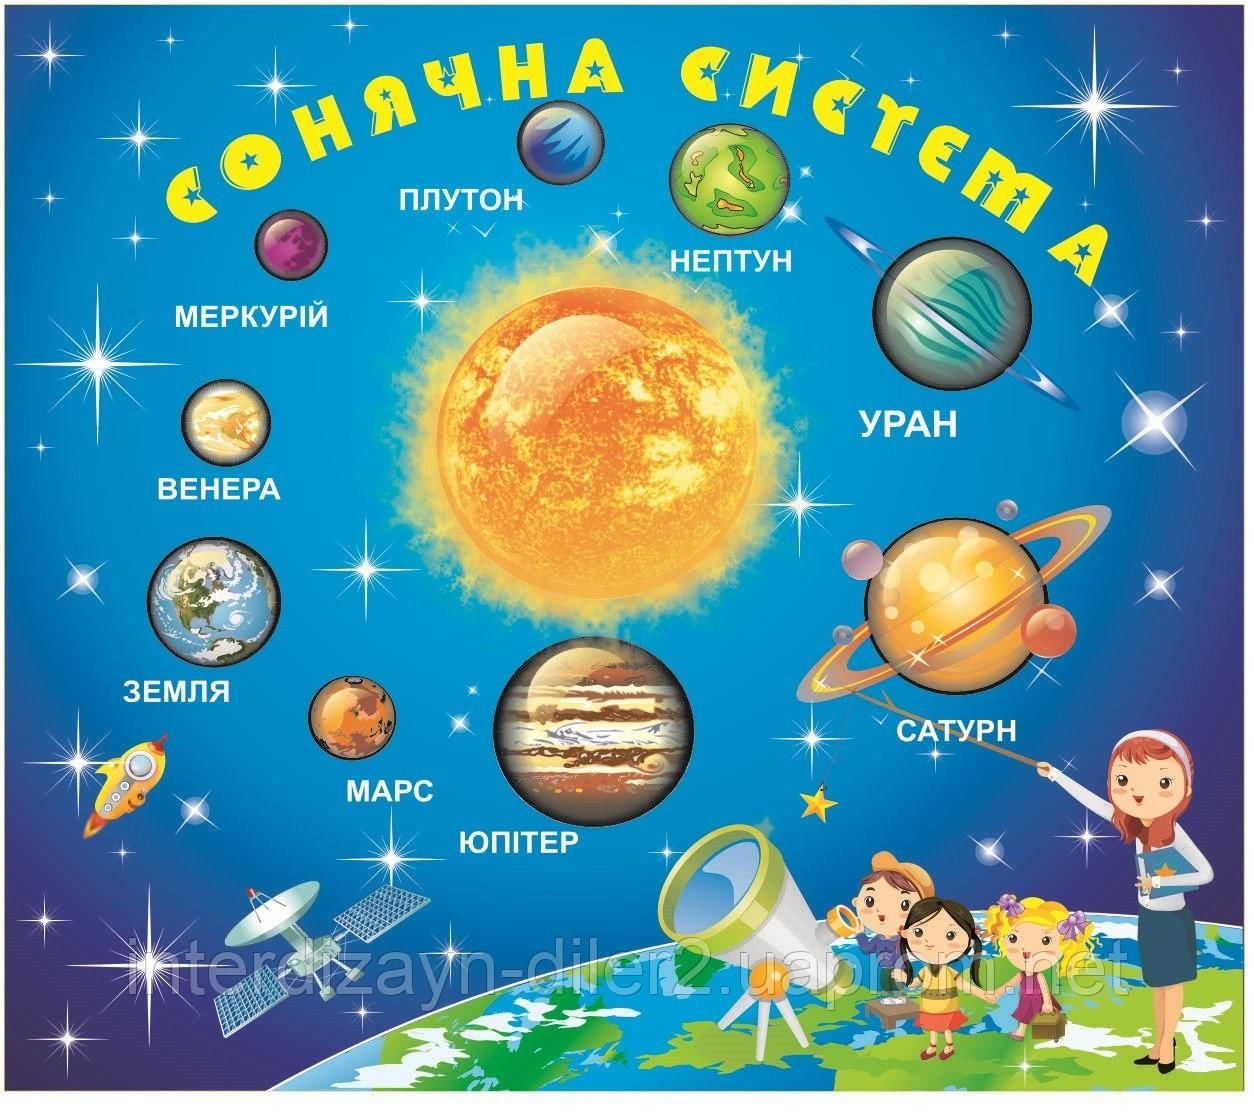 Названия про космос для детей. Планеты солнечной системы для детей. Планеты с названиями для детей. Космос для детей с названием планет. Солнечная система для детей.